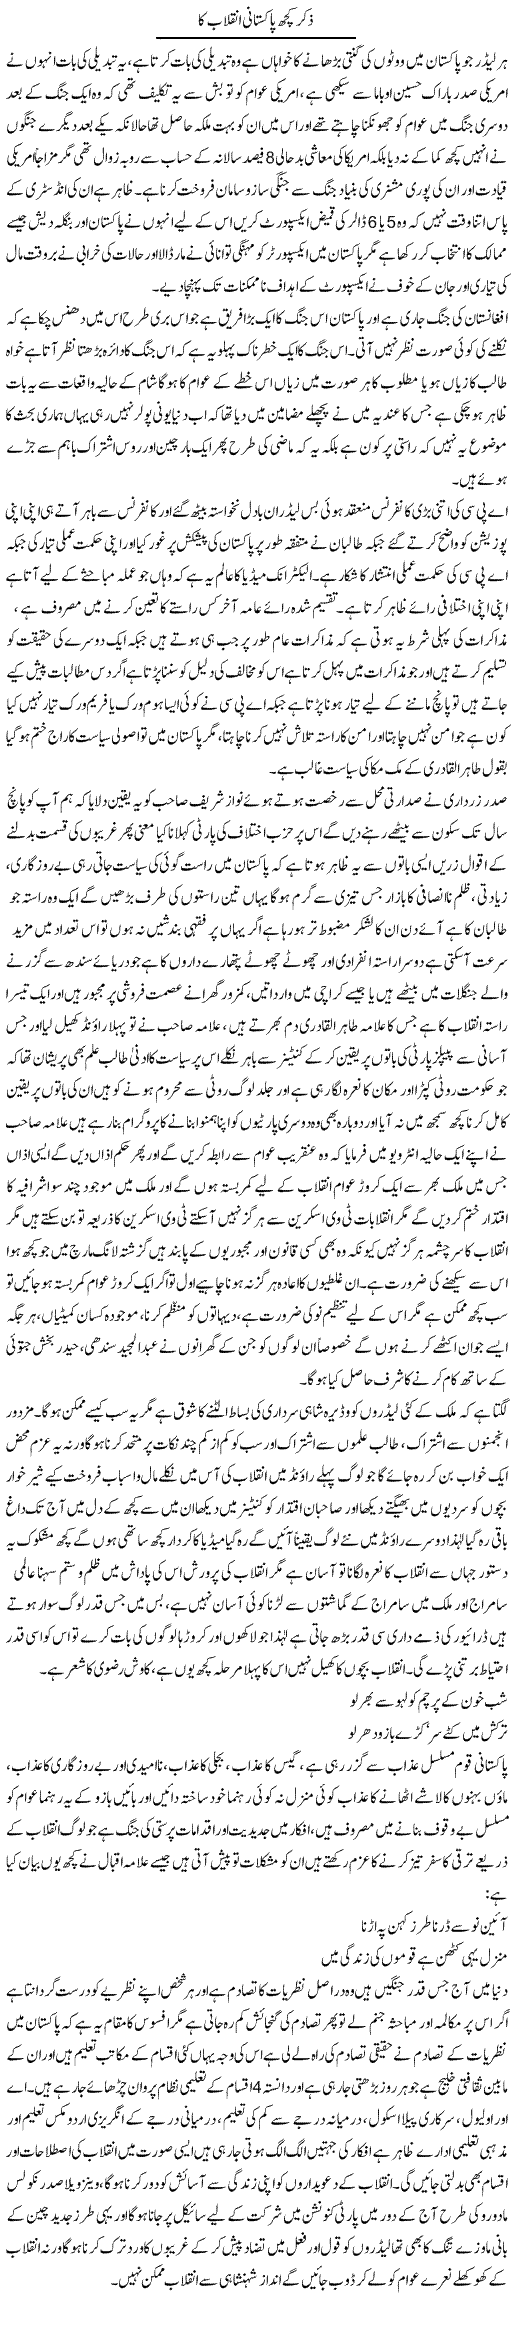 Zikar Kuch Pakistani Inqlaab Ka | Anees Baqar | Daily Urdu Columns